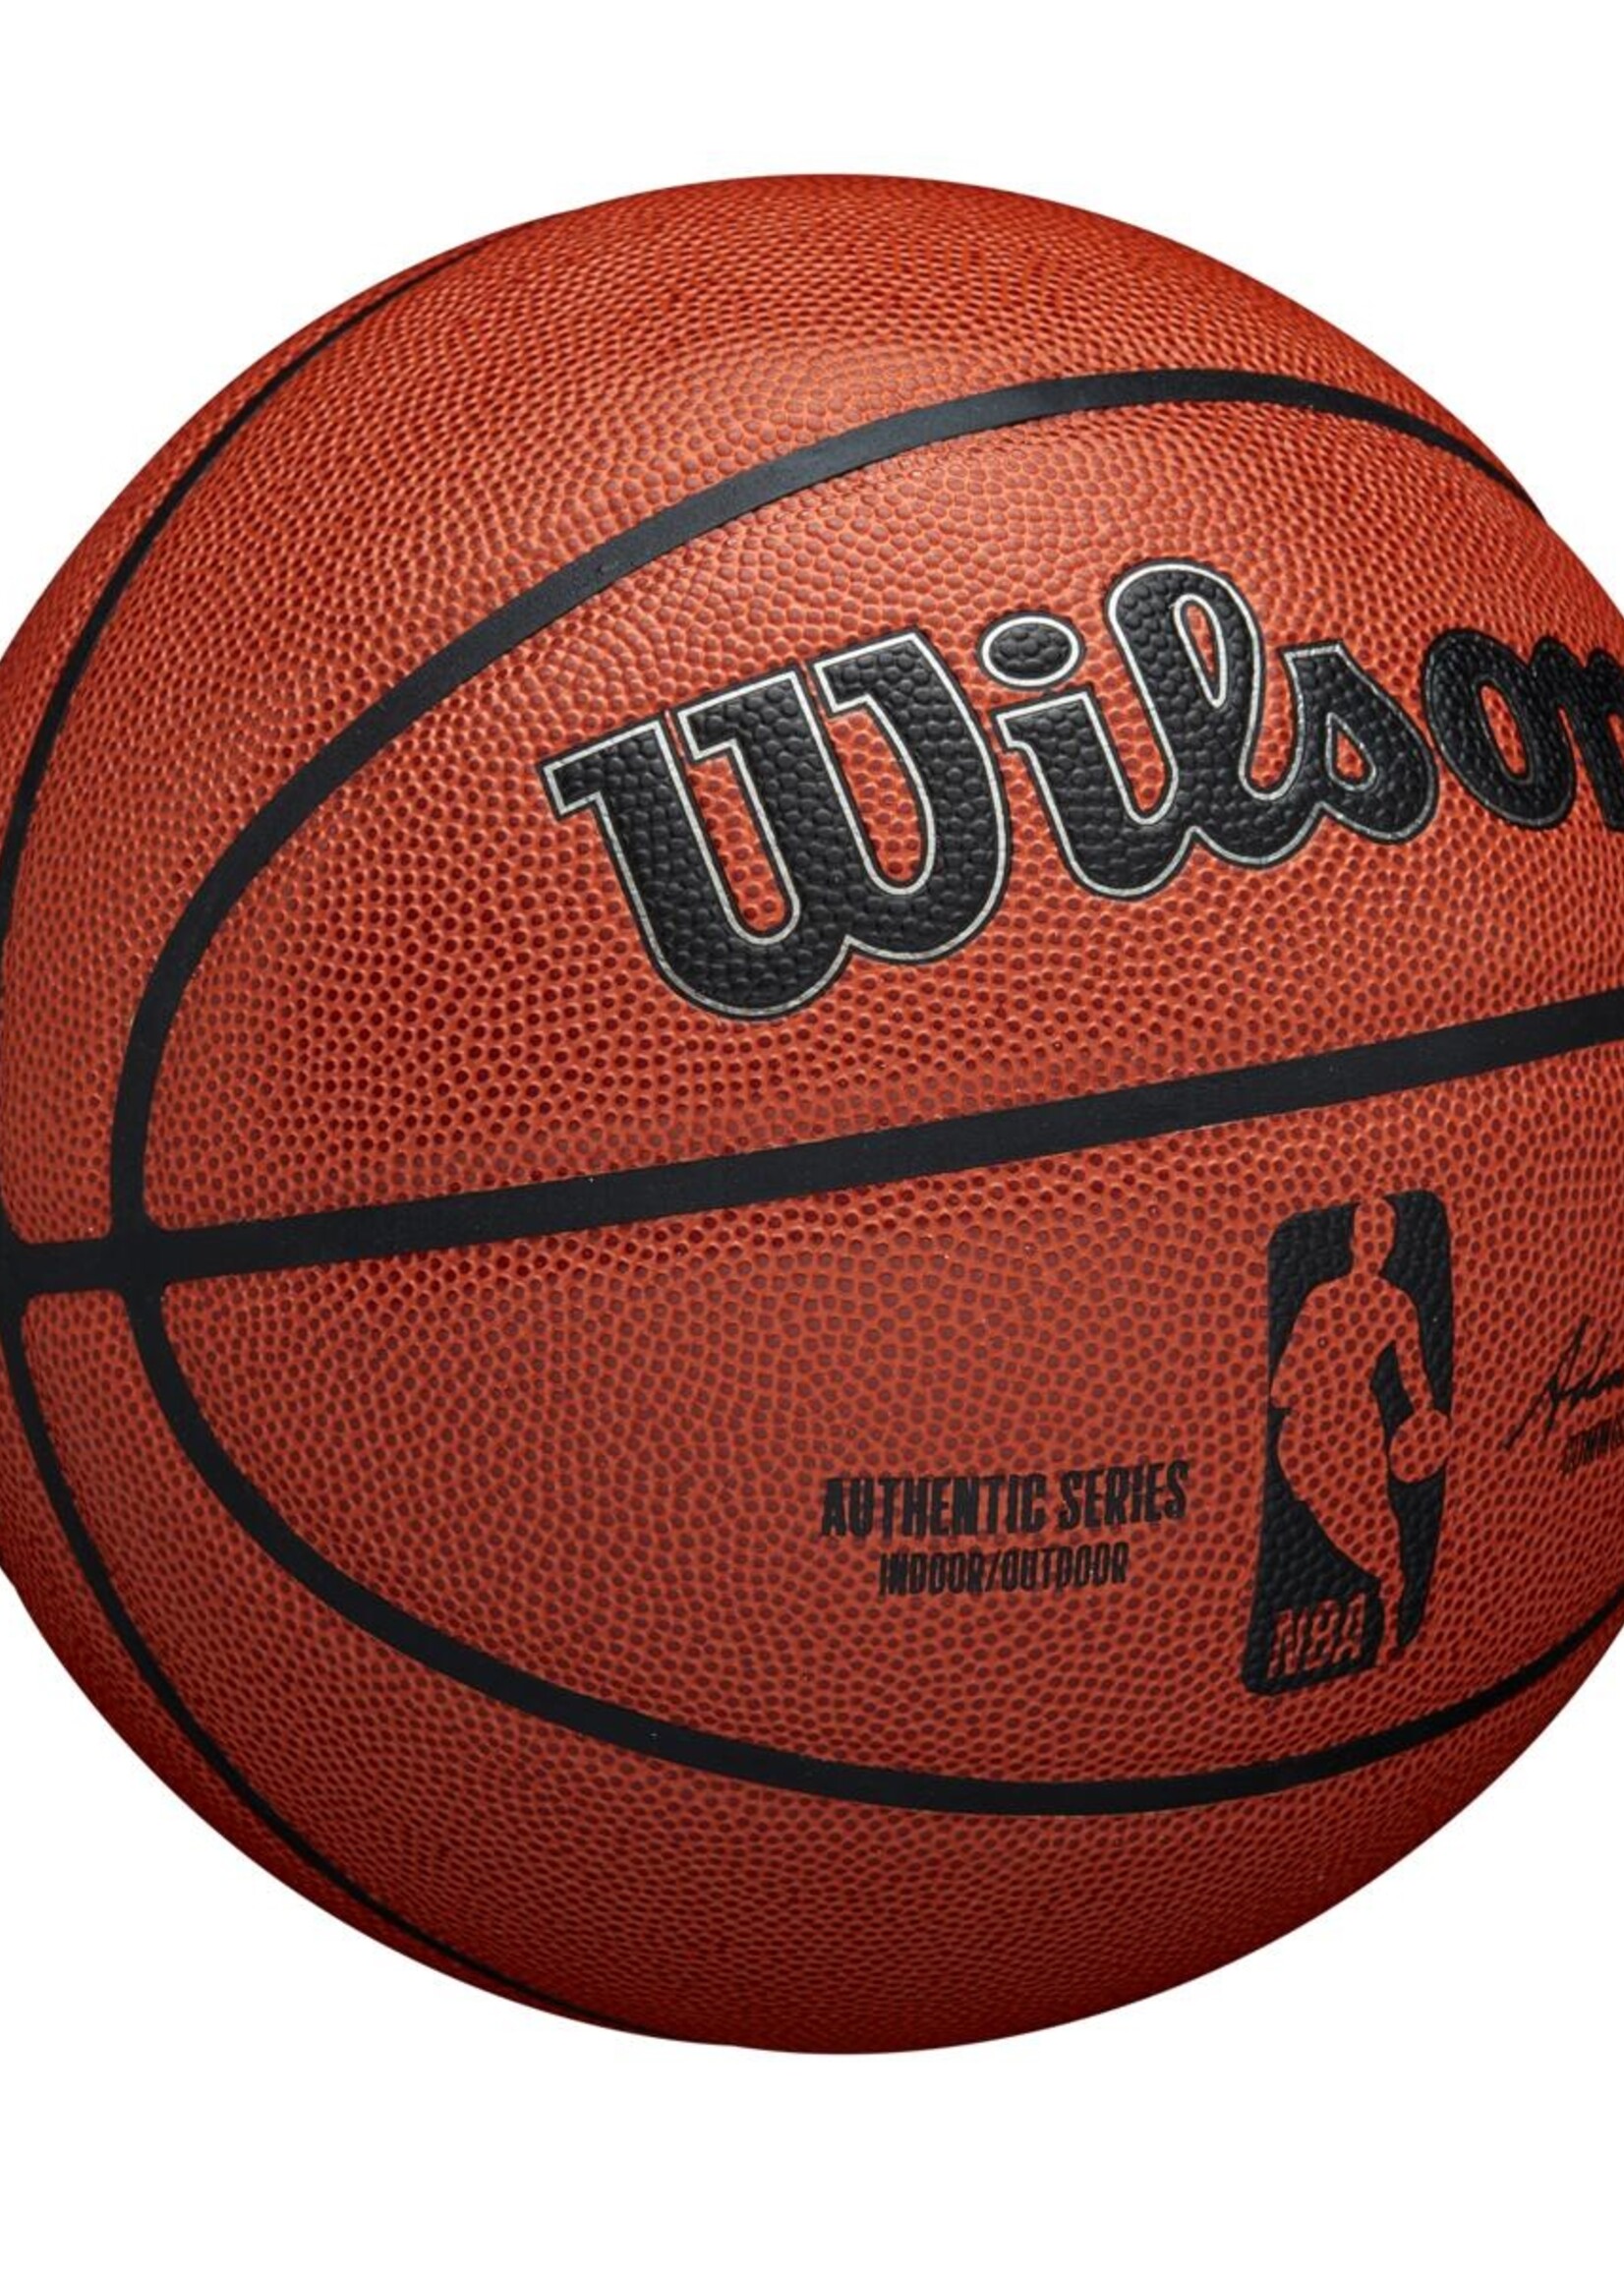 Wilson Wilson NBA Authentic Indoor Outdoor Basketball (7)